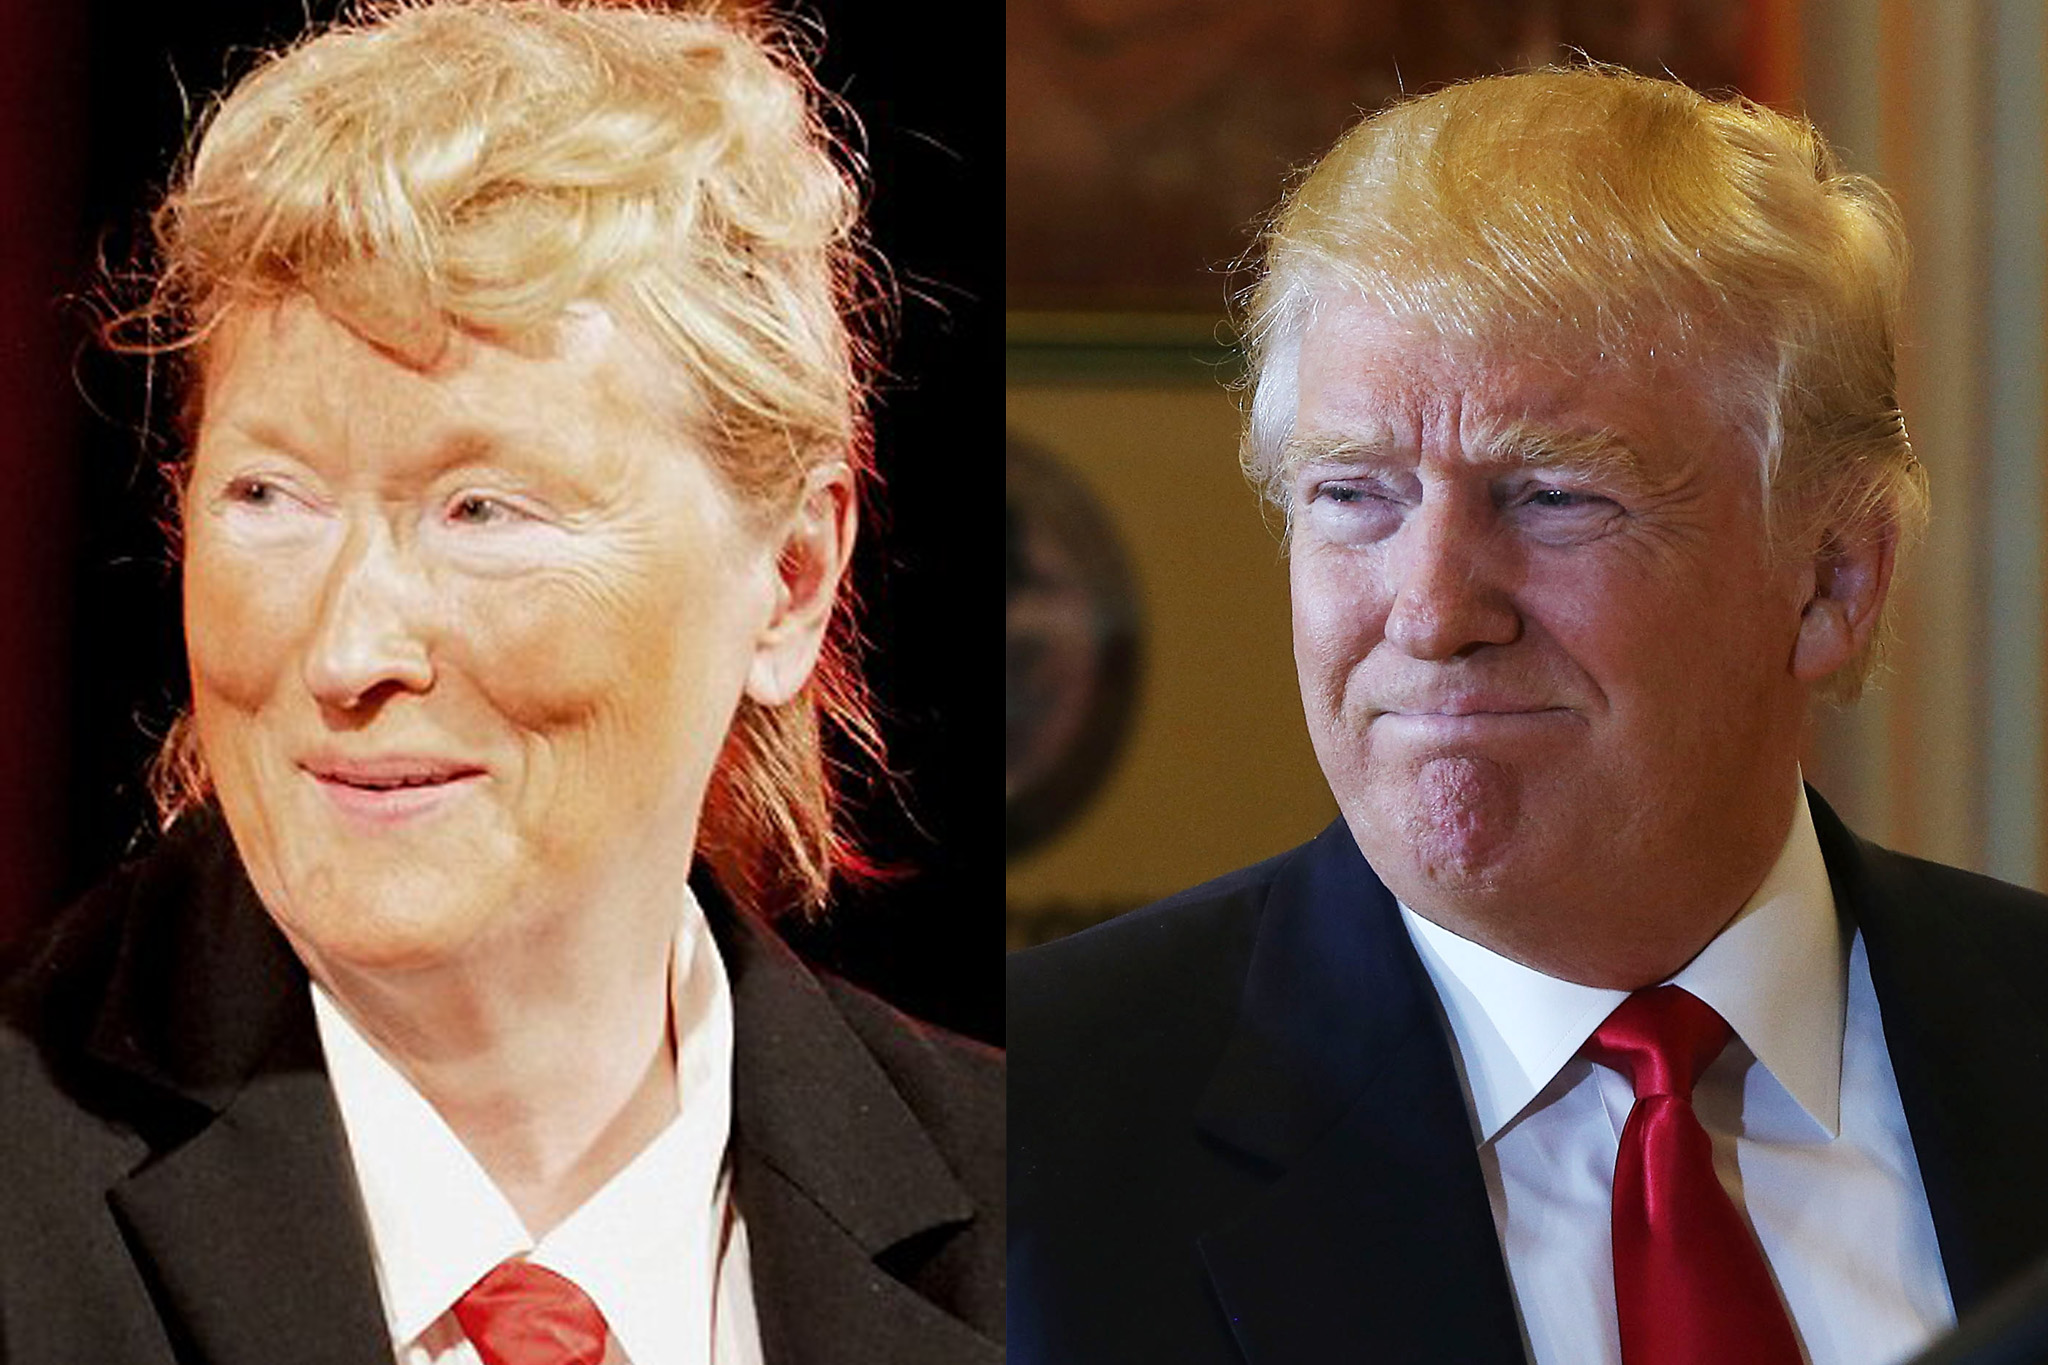 Meryl STreep as Donald Trump and Donald Trump as Donald Trump